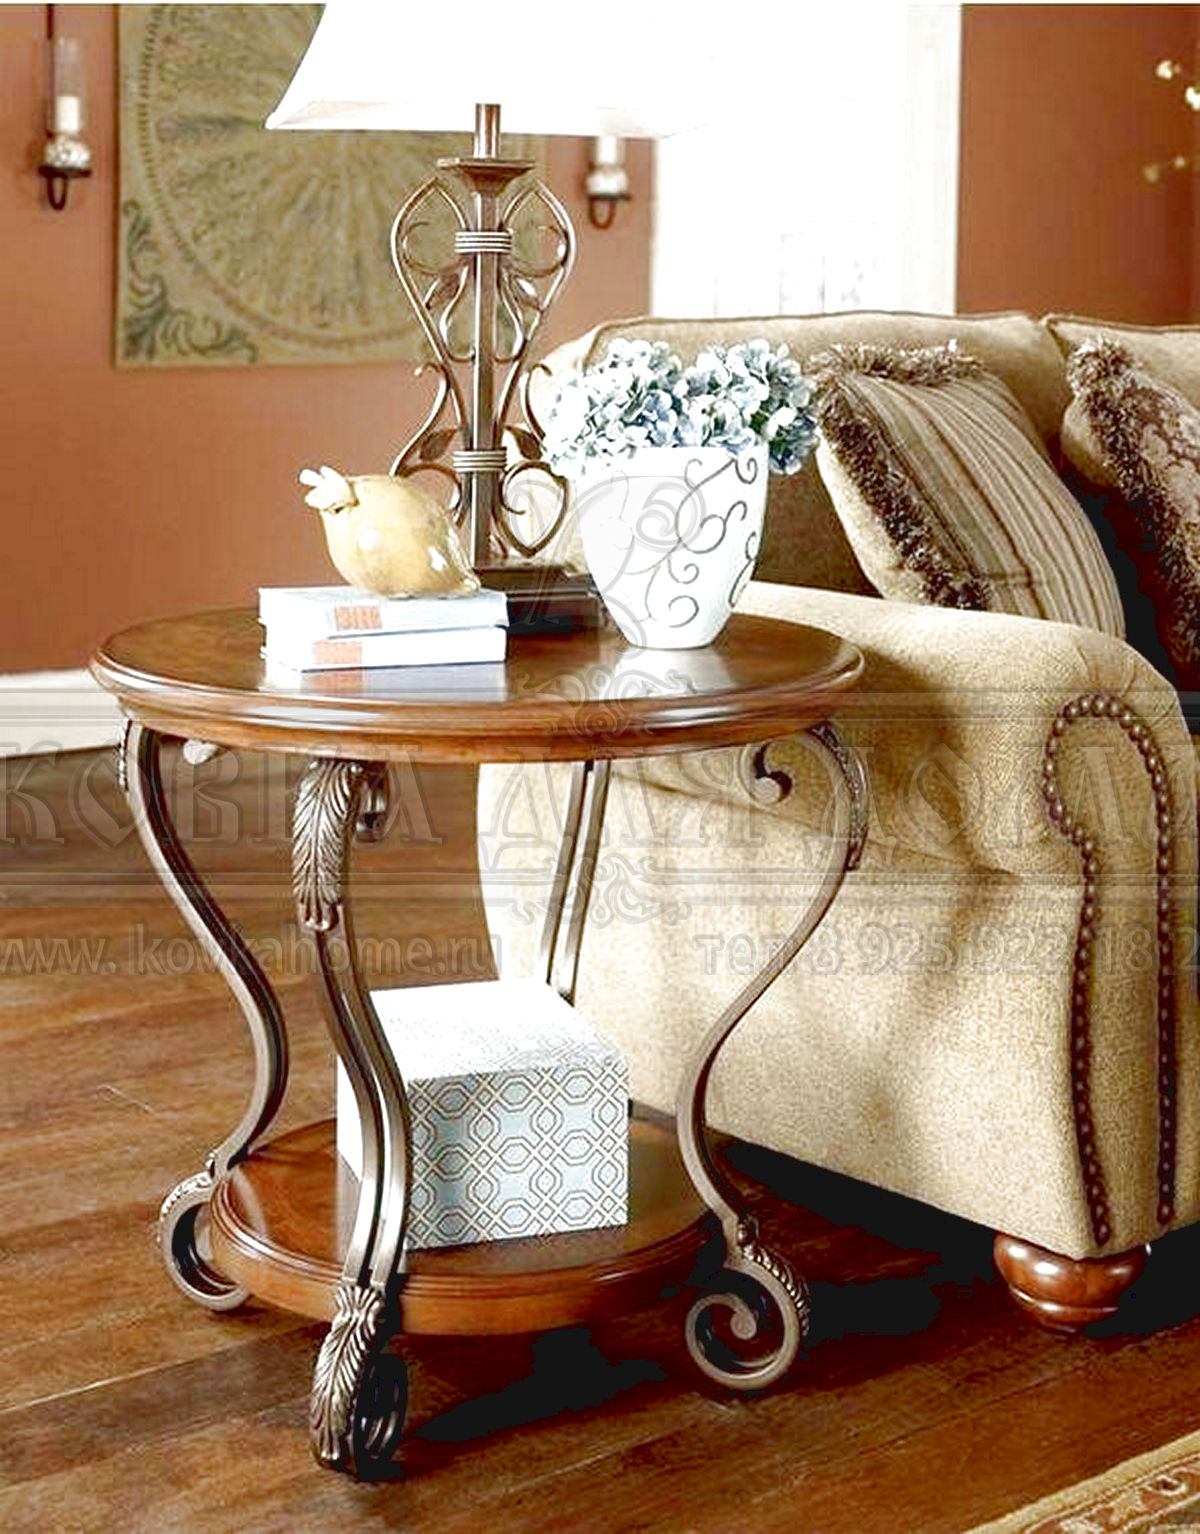 Кованый столик в стиле Барокко, очень красивый отлично подойдет к вашей мягкой мебели размер 450(h)хD50мм